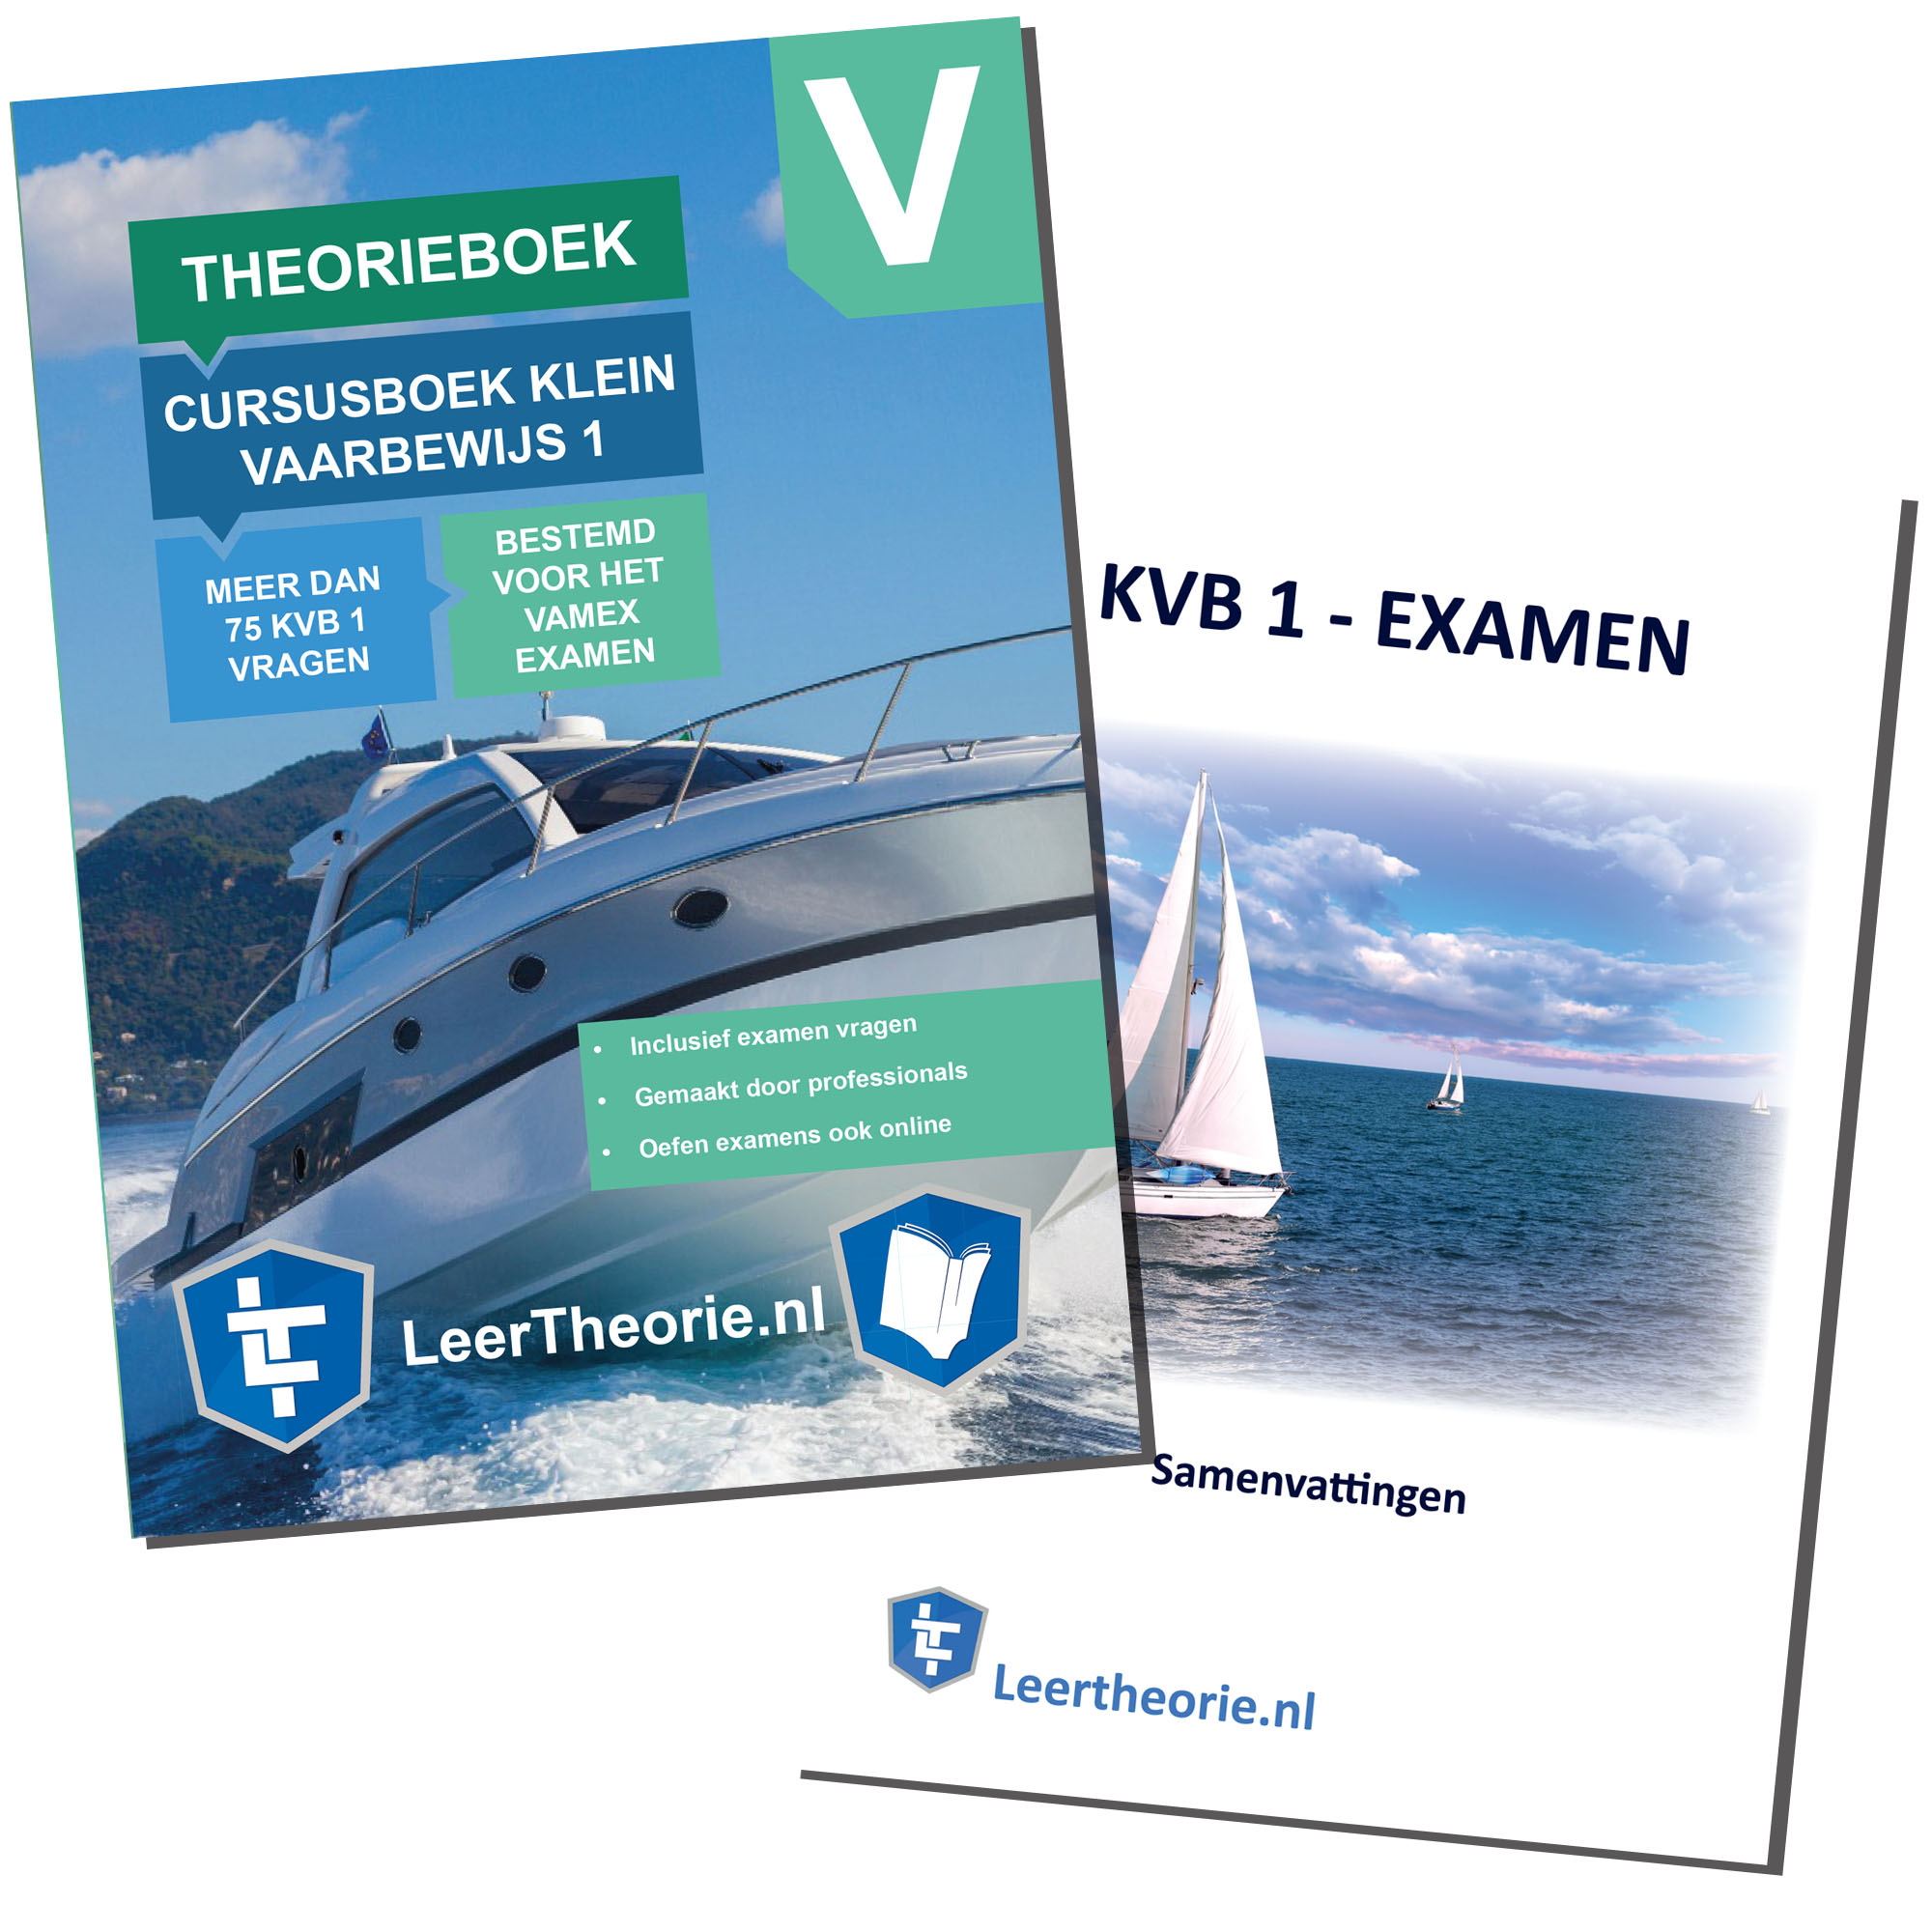 rijbewijstheorieboeken.nl - Theorieboek Cursusboek + Samenvatting - Klein Vaarbewijs 1 - Nederland - KVB 1 - KVB1 - LeerTheorie